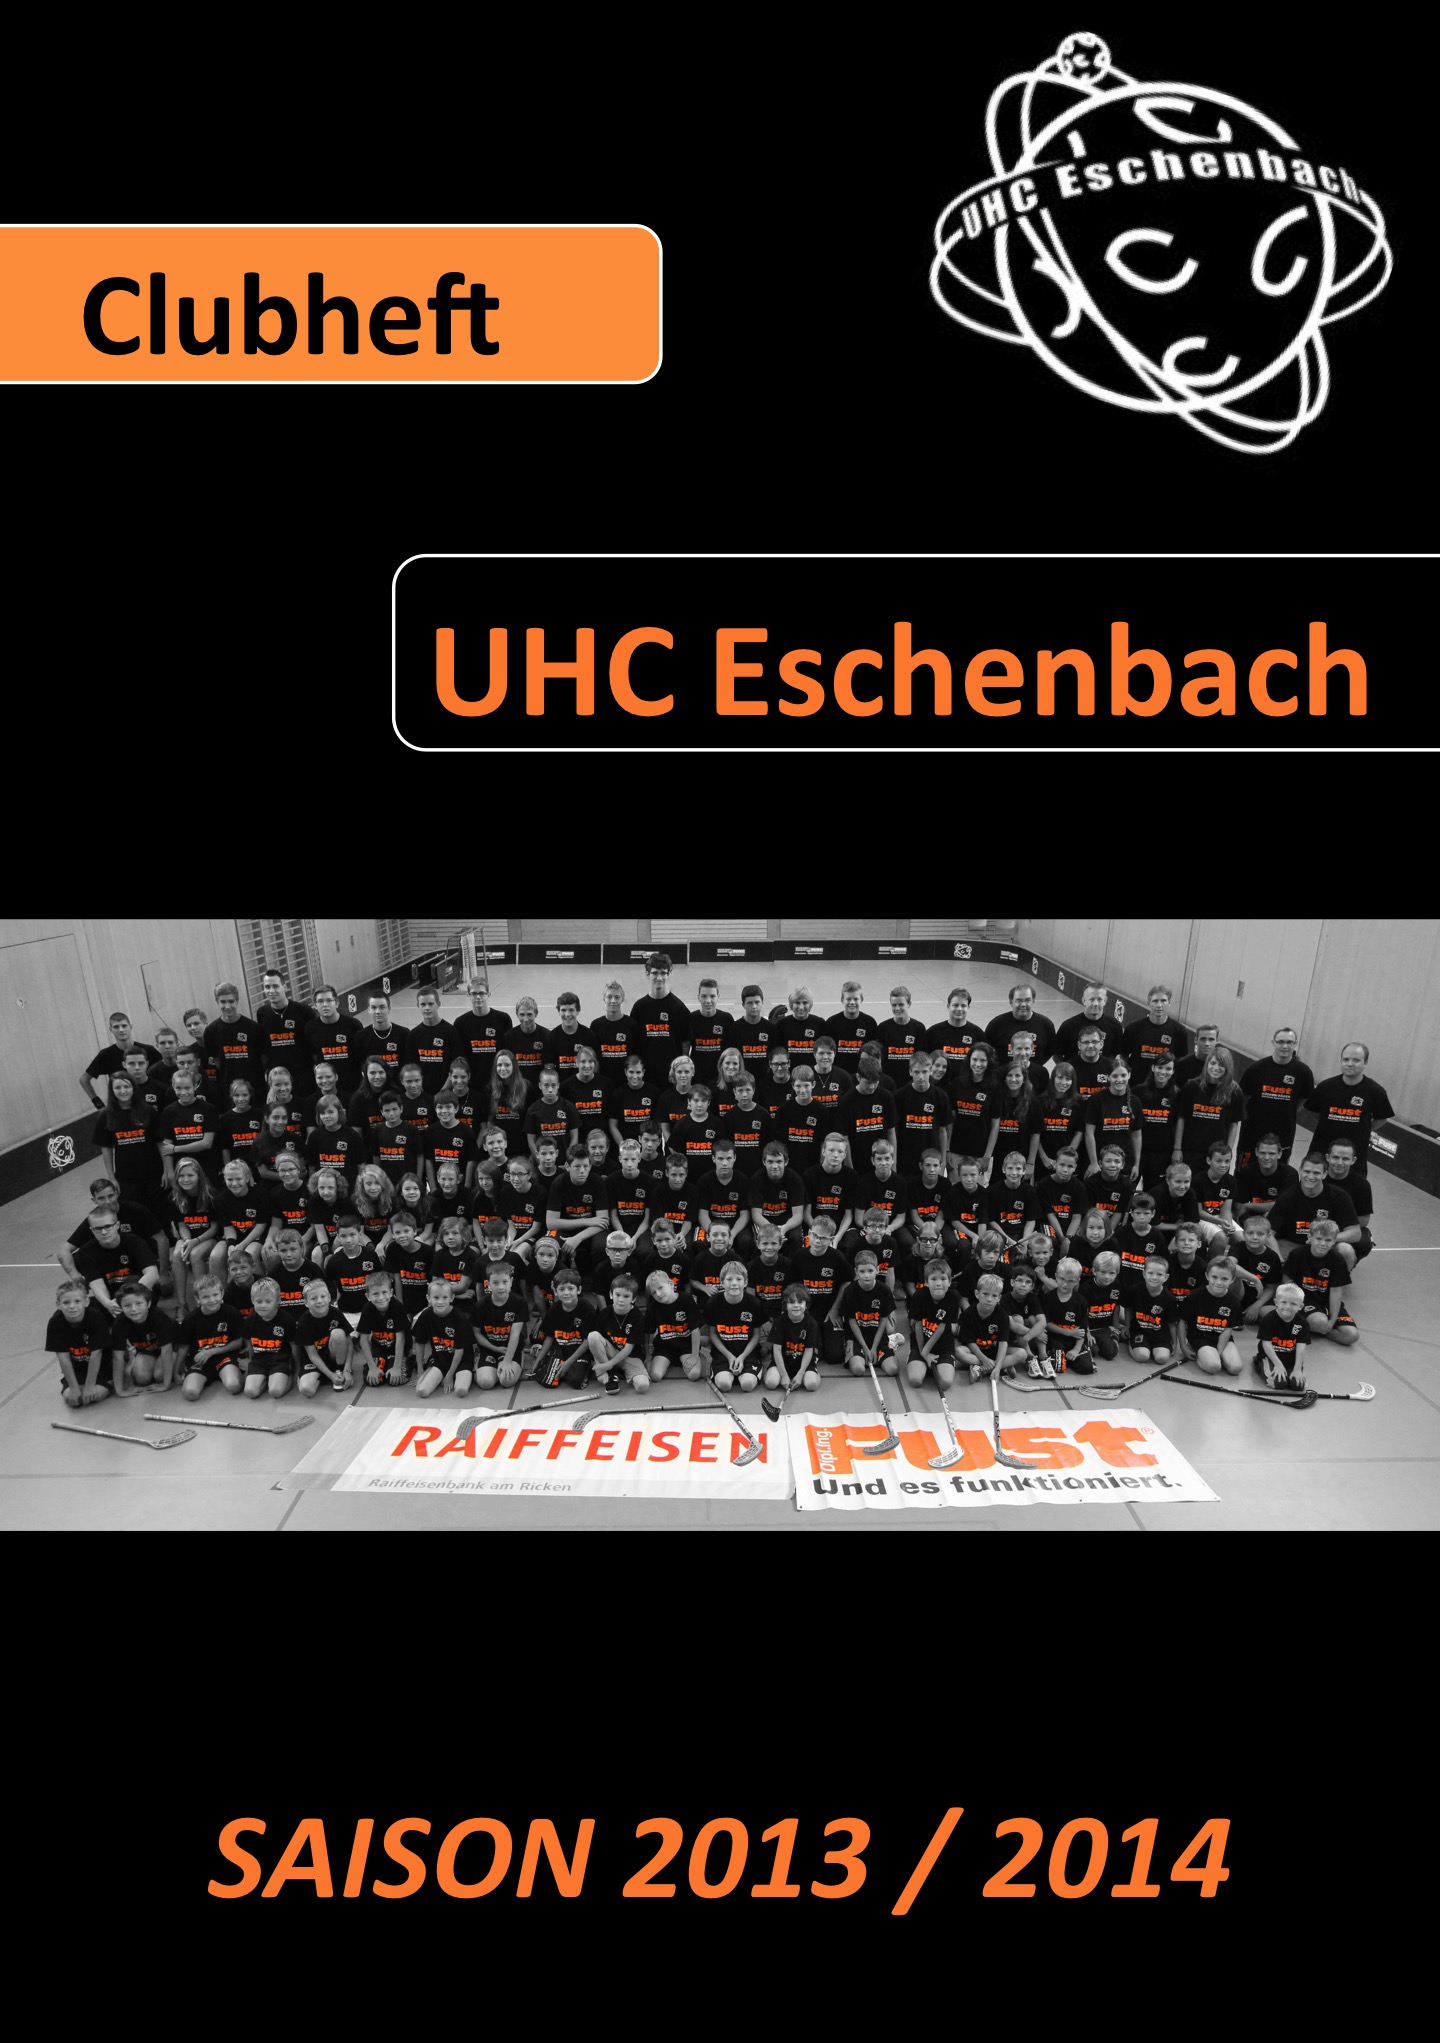 Clubheft Saison 2013/2014